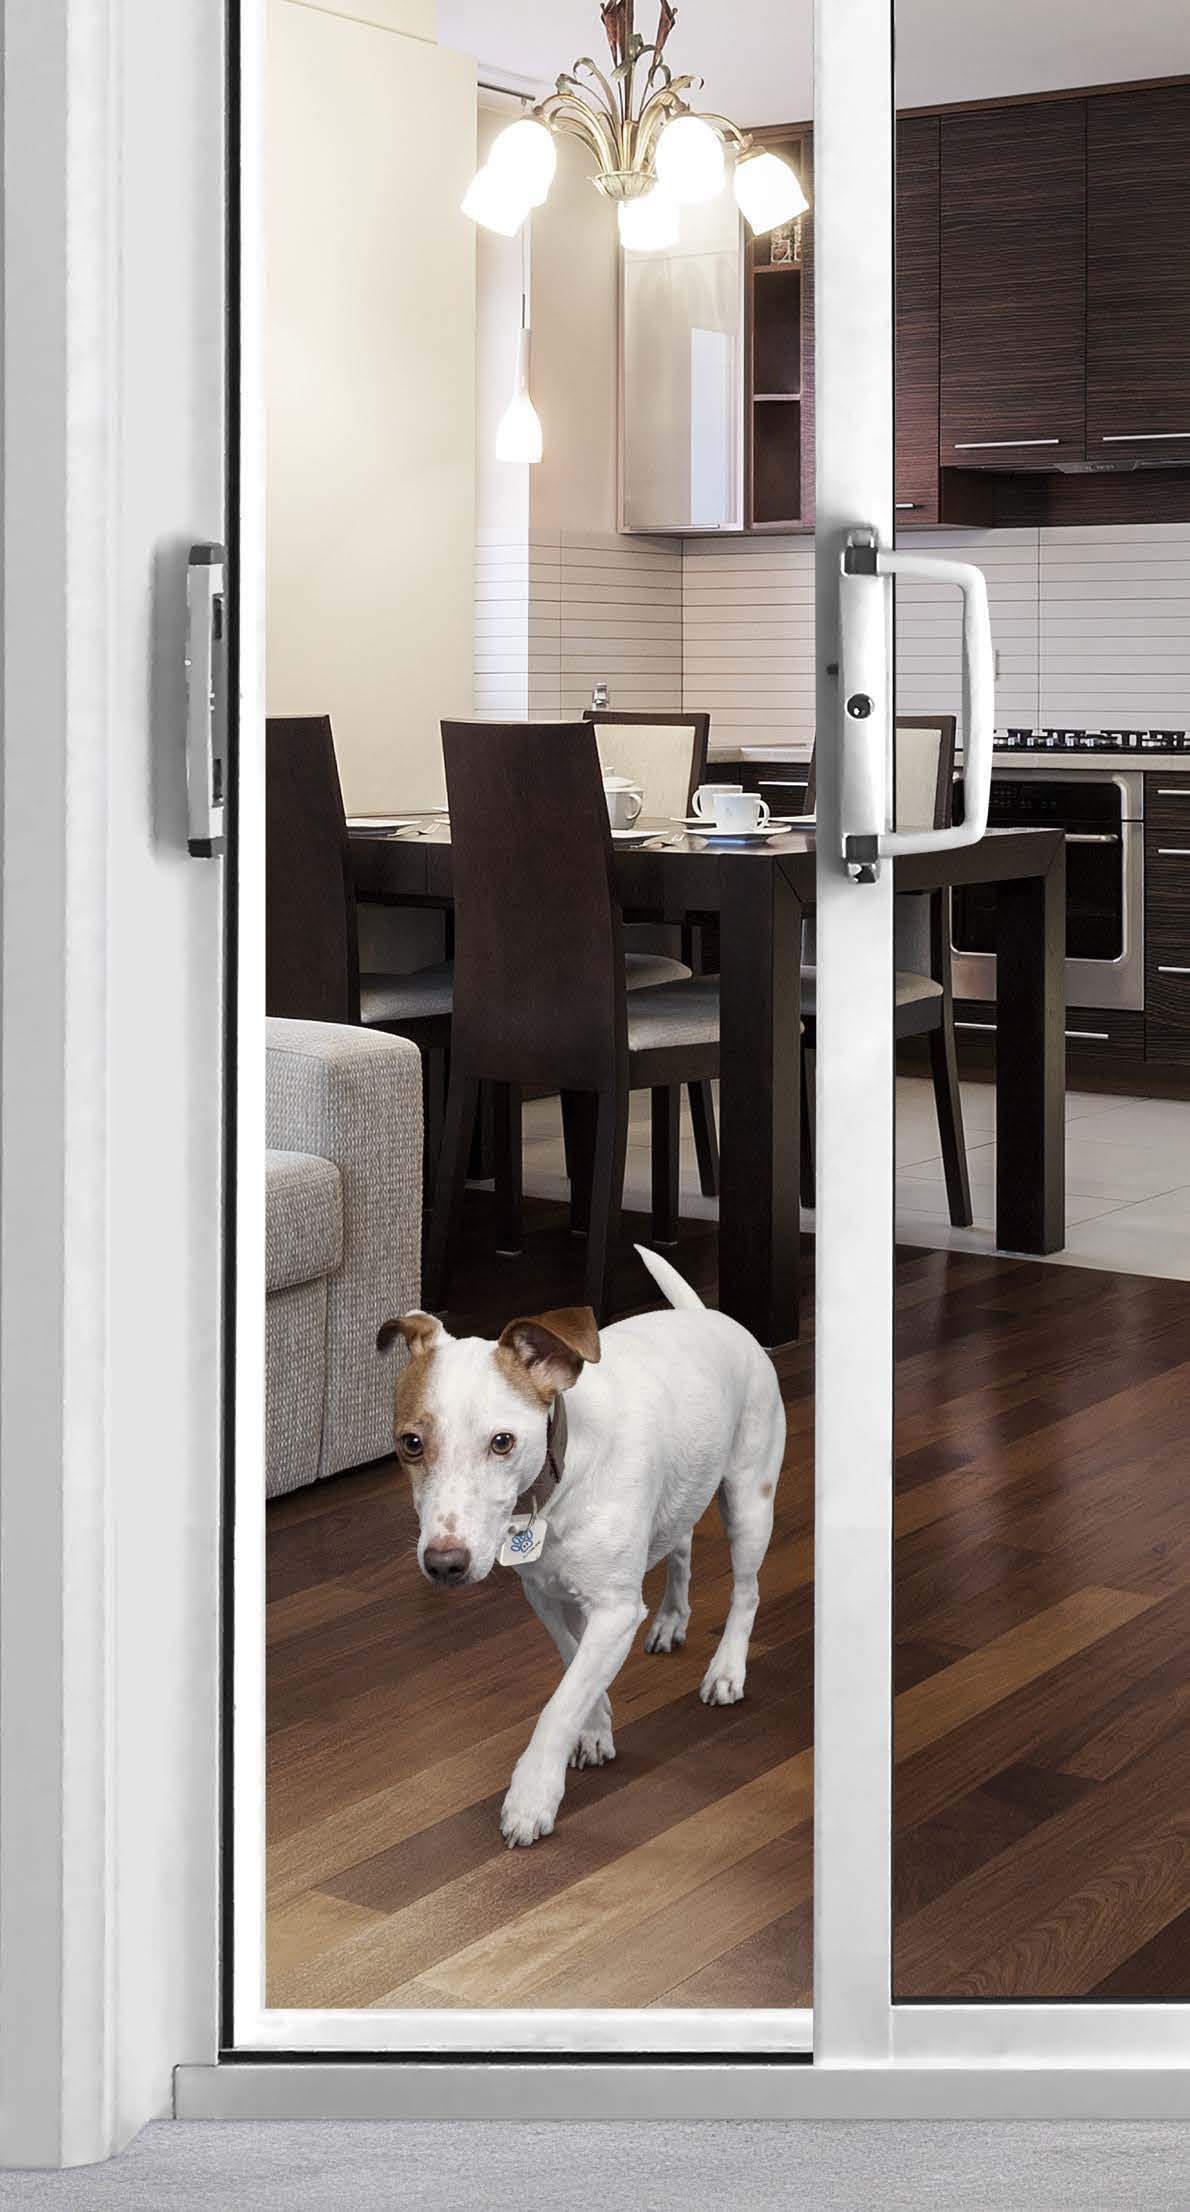 K9 Smart Tag for Autoslide RFID Pet Door-Pet Door-Pet's Choice Supply